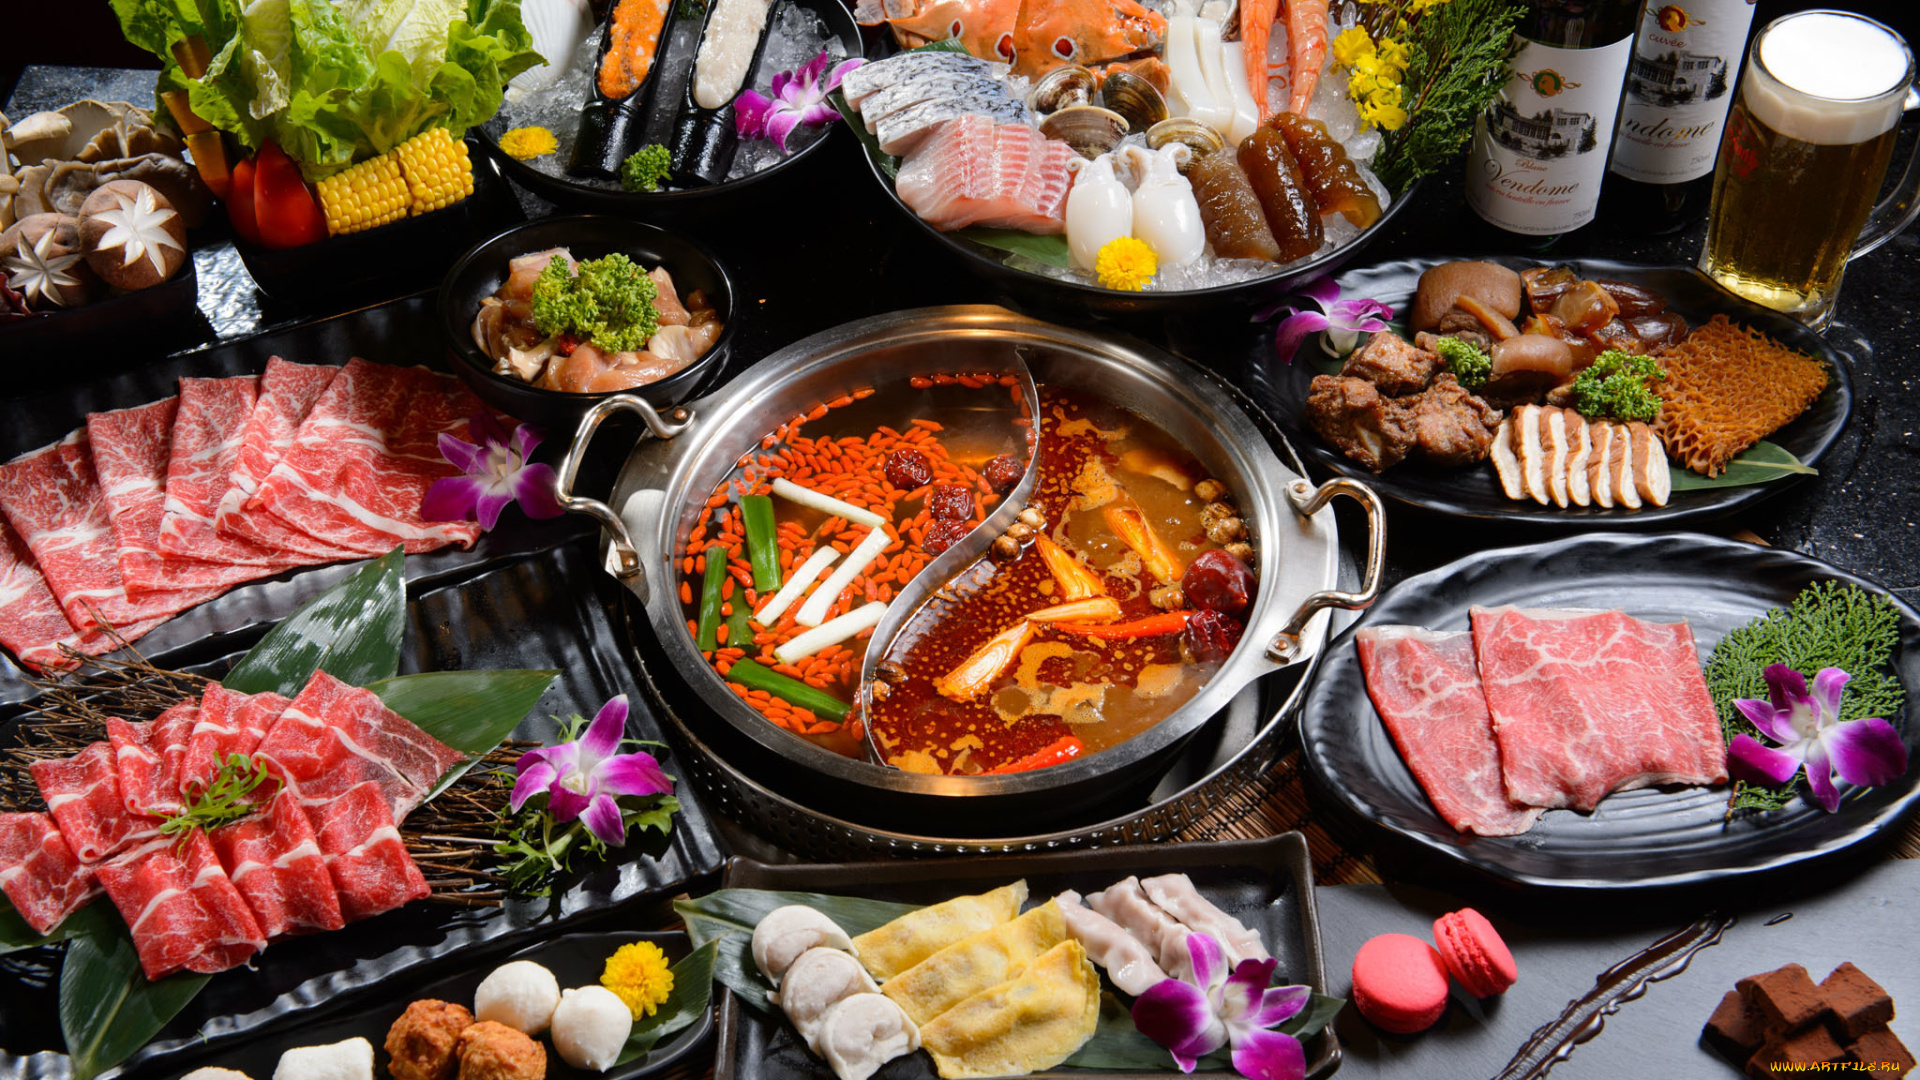 еда, разное, ассорти, блюда, китайская, кухня, суп, морепродукты, рыба, мясо, овощи